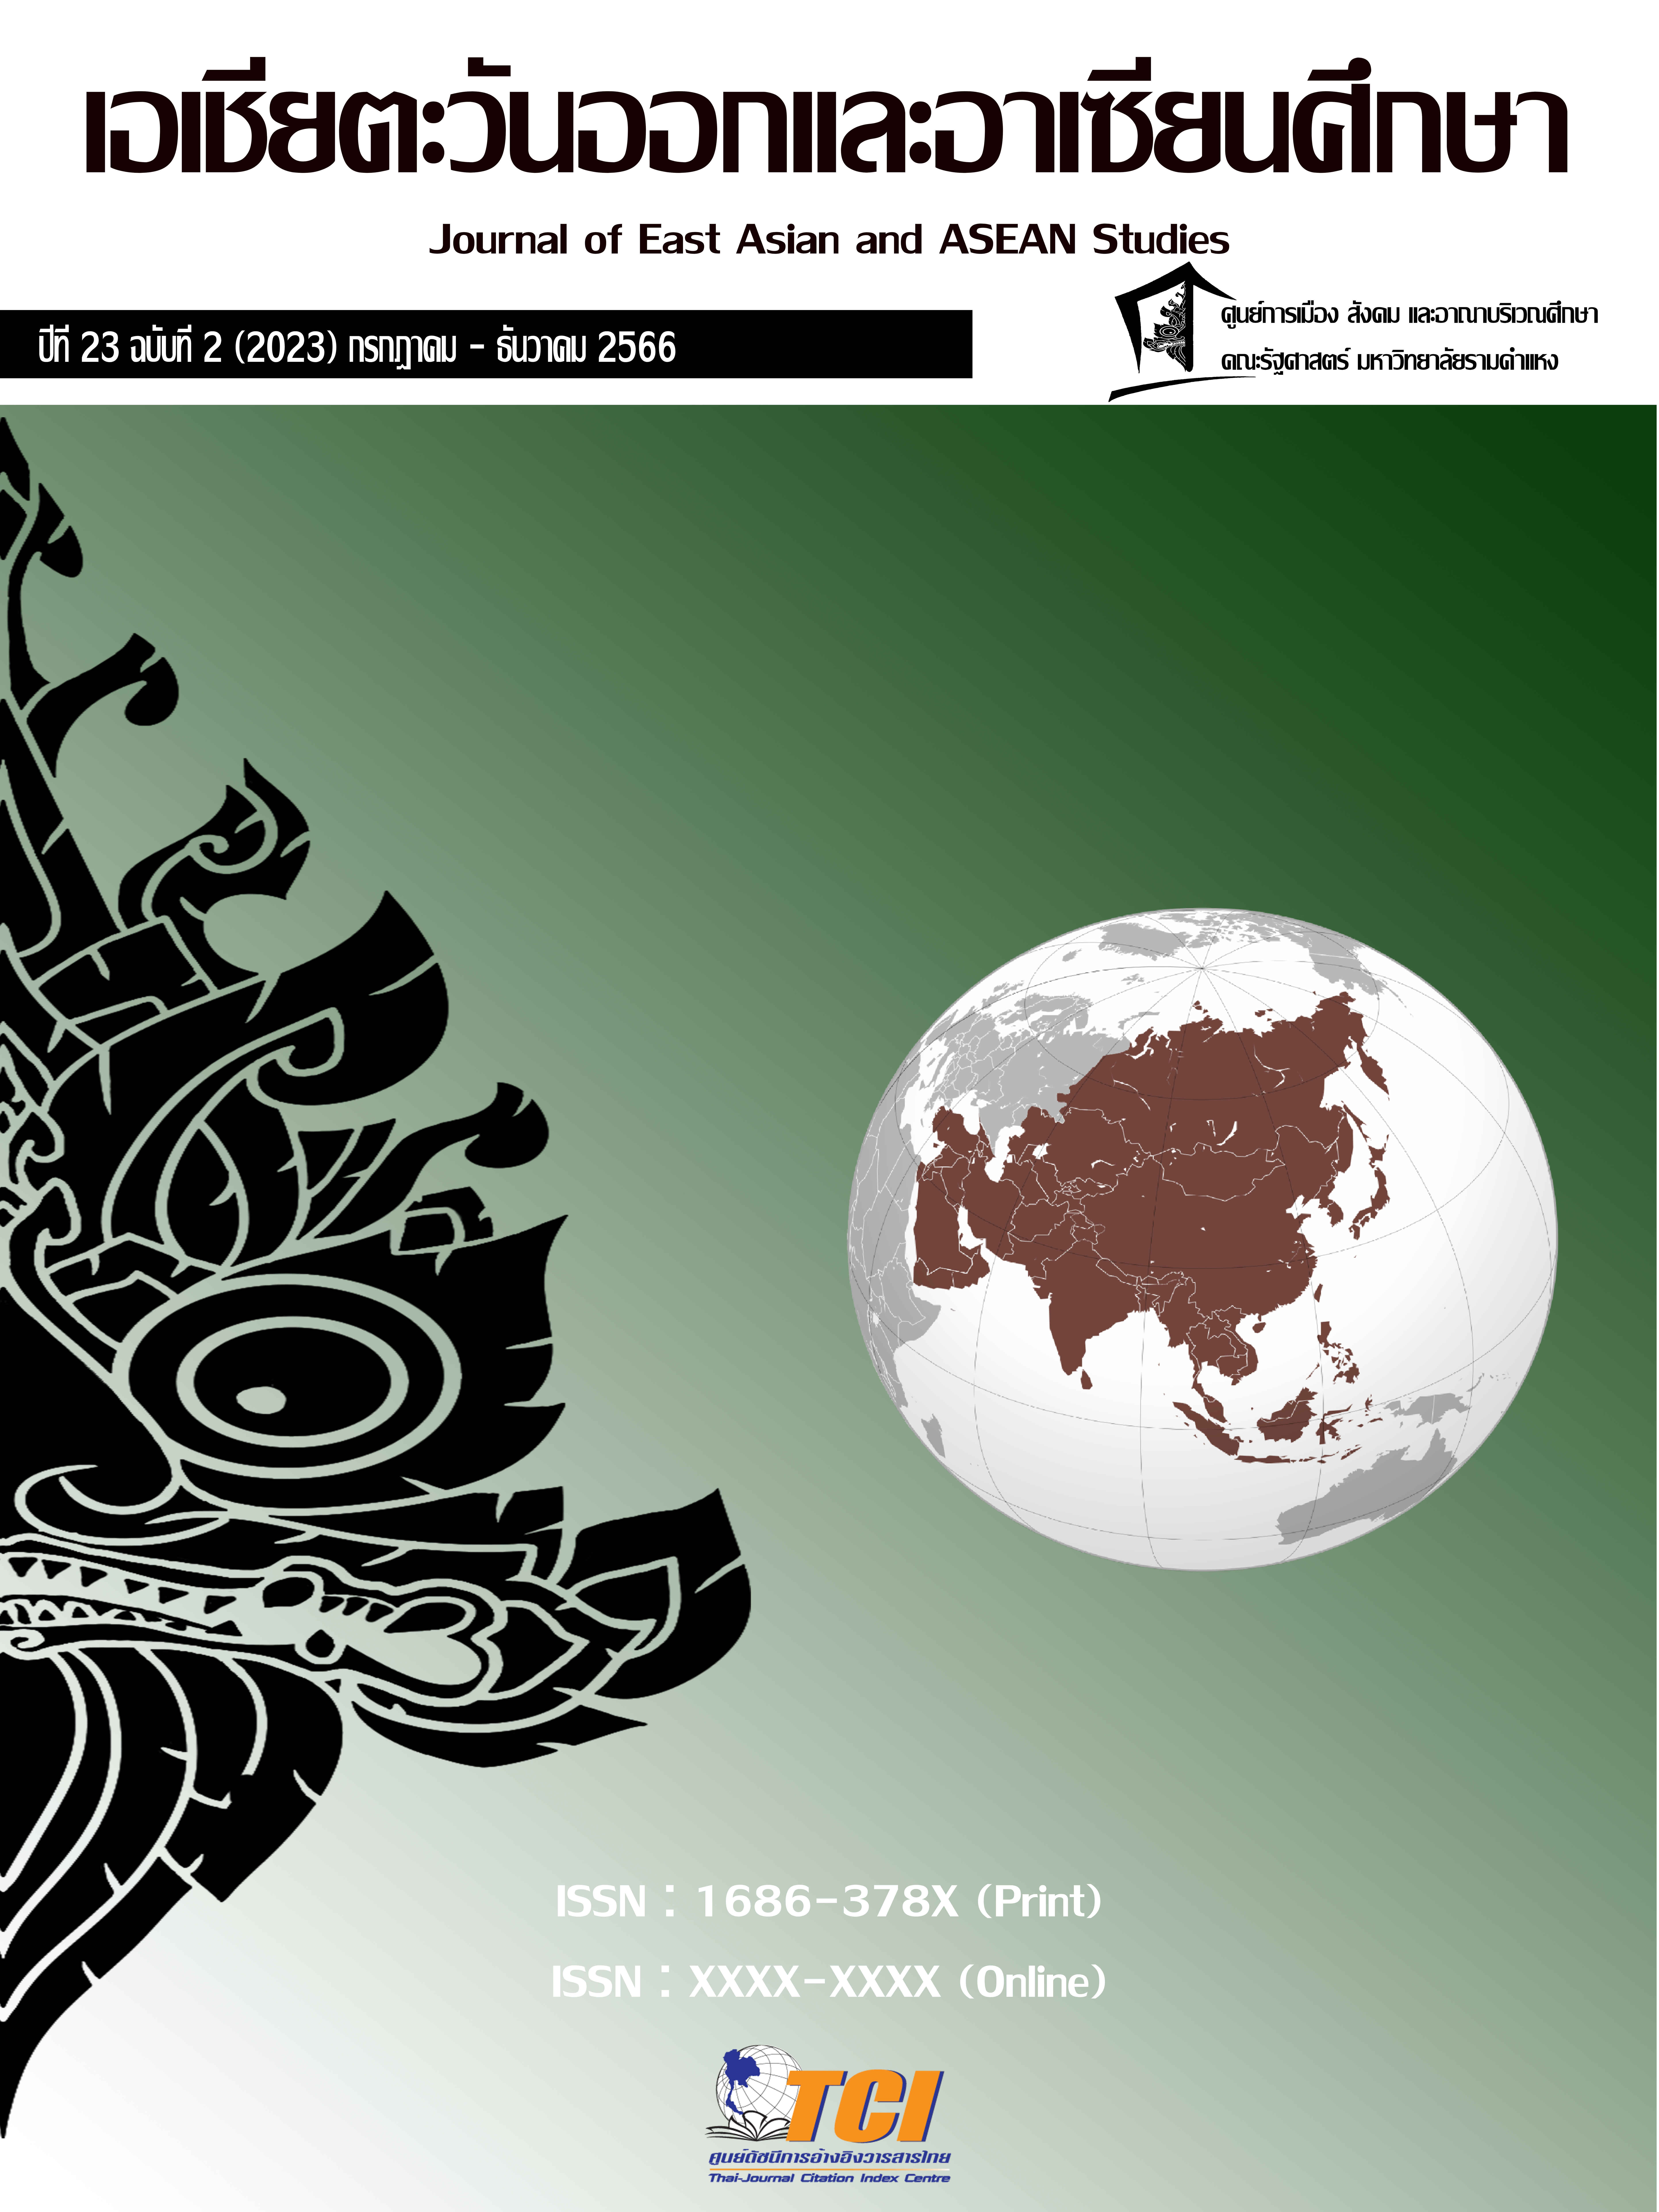 					ดู ปีที่ 23 ฉบับที่ 2 (2023): วารสารเอเชียตะวันออกเเละอาเซียนศึกษา
				